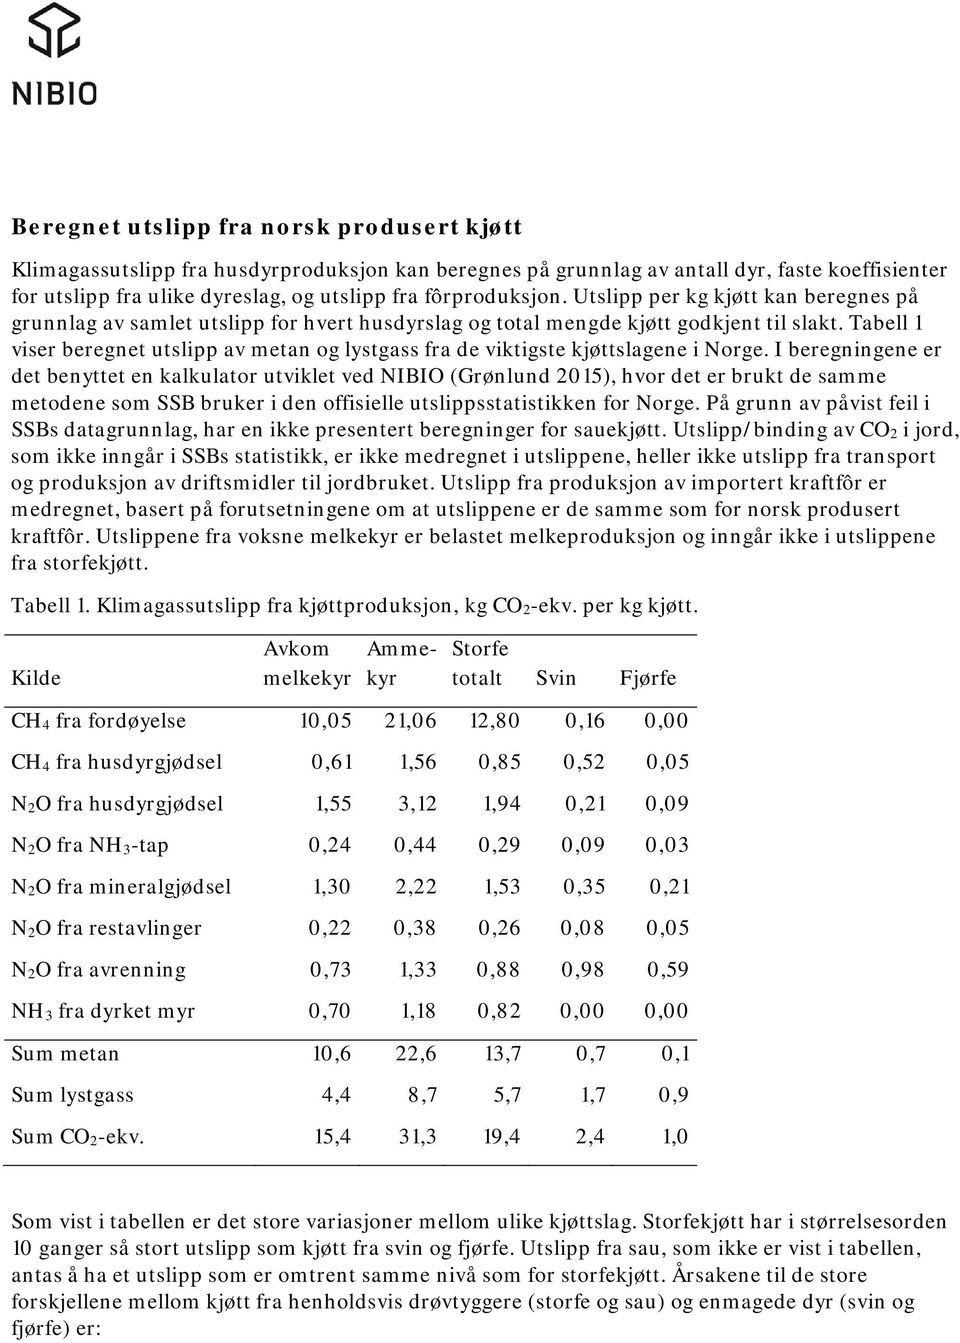 Tabell 1 viser beregnet utslipp av metan og lystgass fra de viktigste kjøttslagene i Norge.